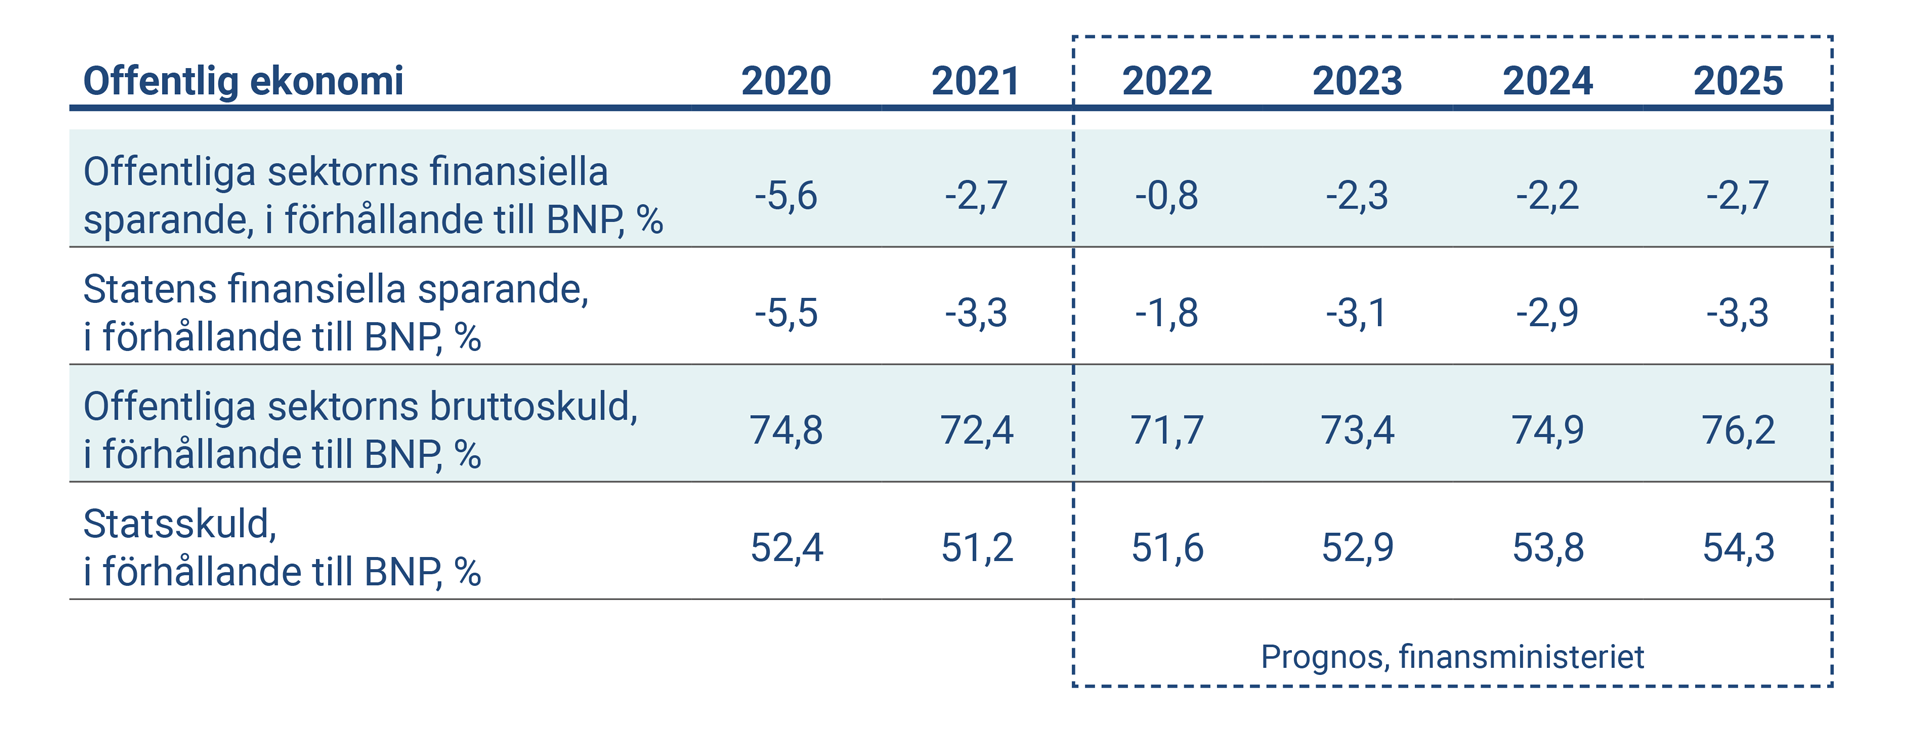 Tabellen visar nyckeltal om Finlands offentlig ekonomi 2020-2025.